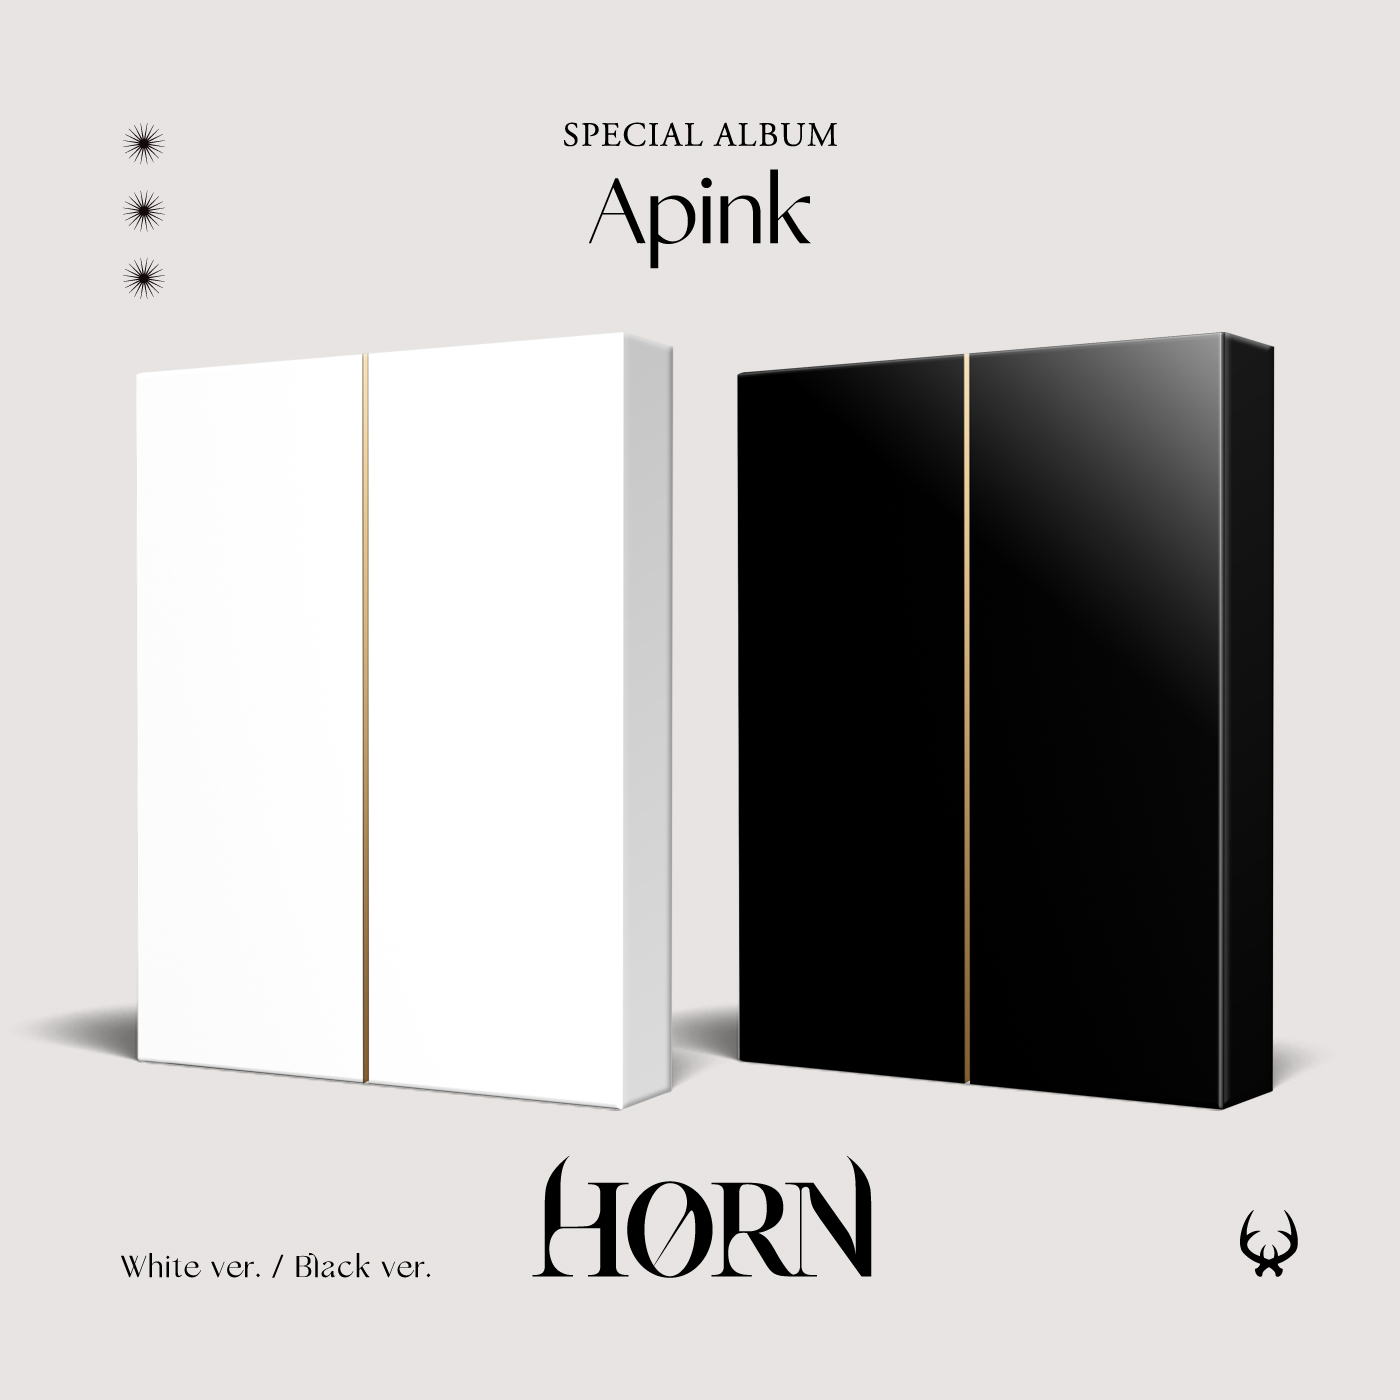 [全款 特典专] Apink - 特别专辑 [HORN]_郑恩地中文首站